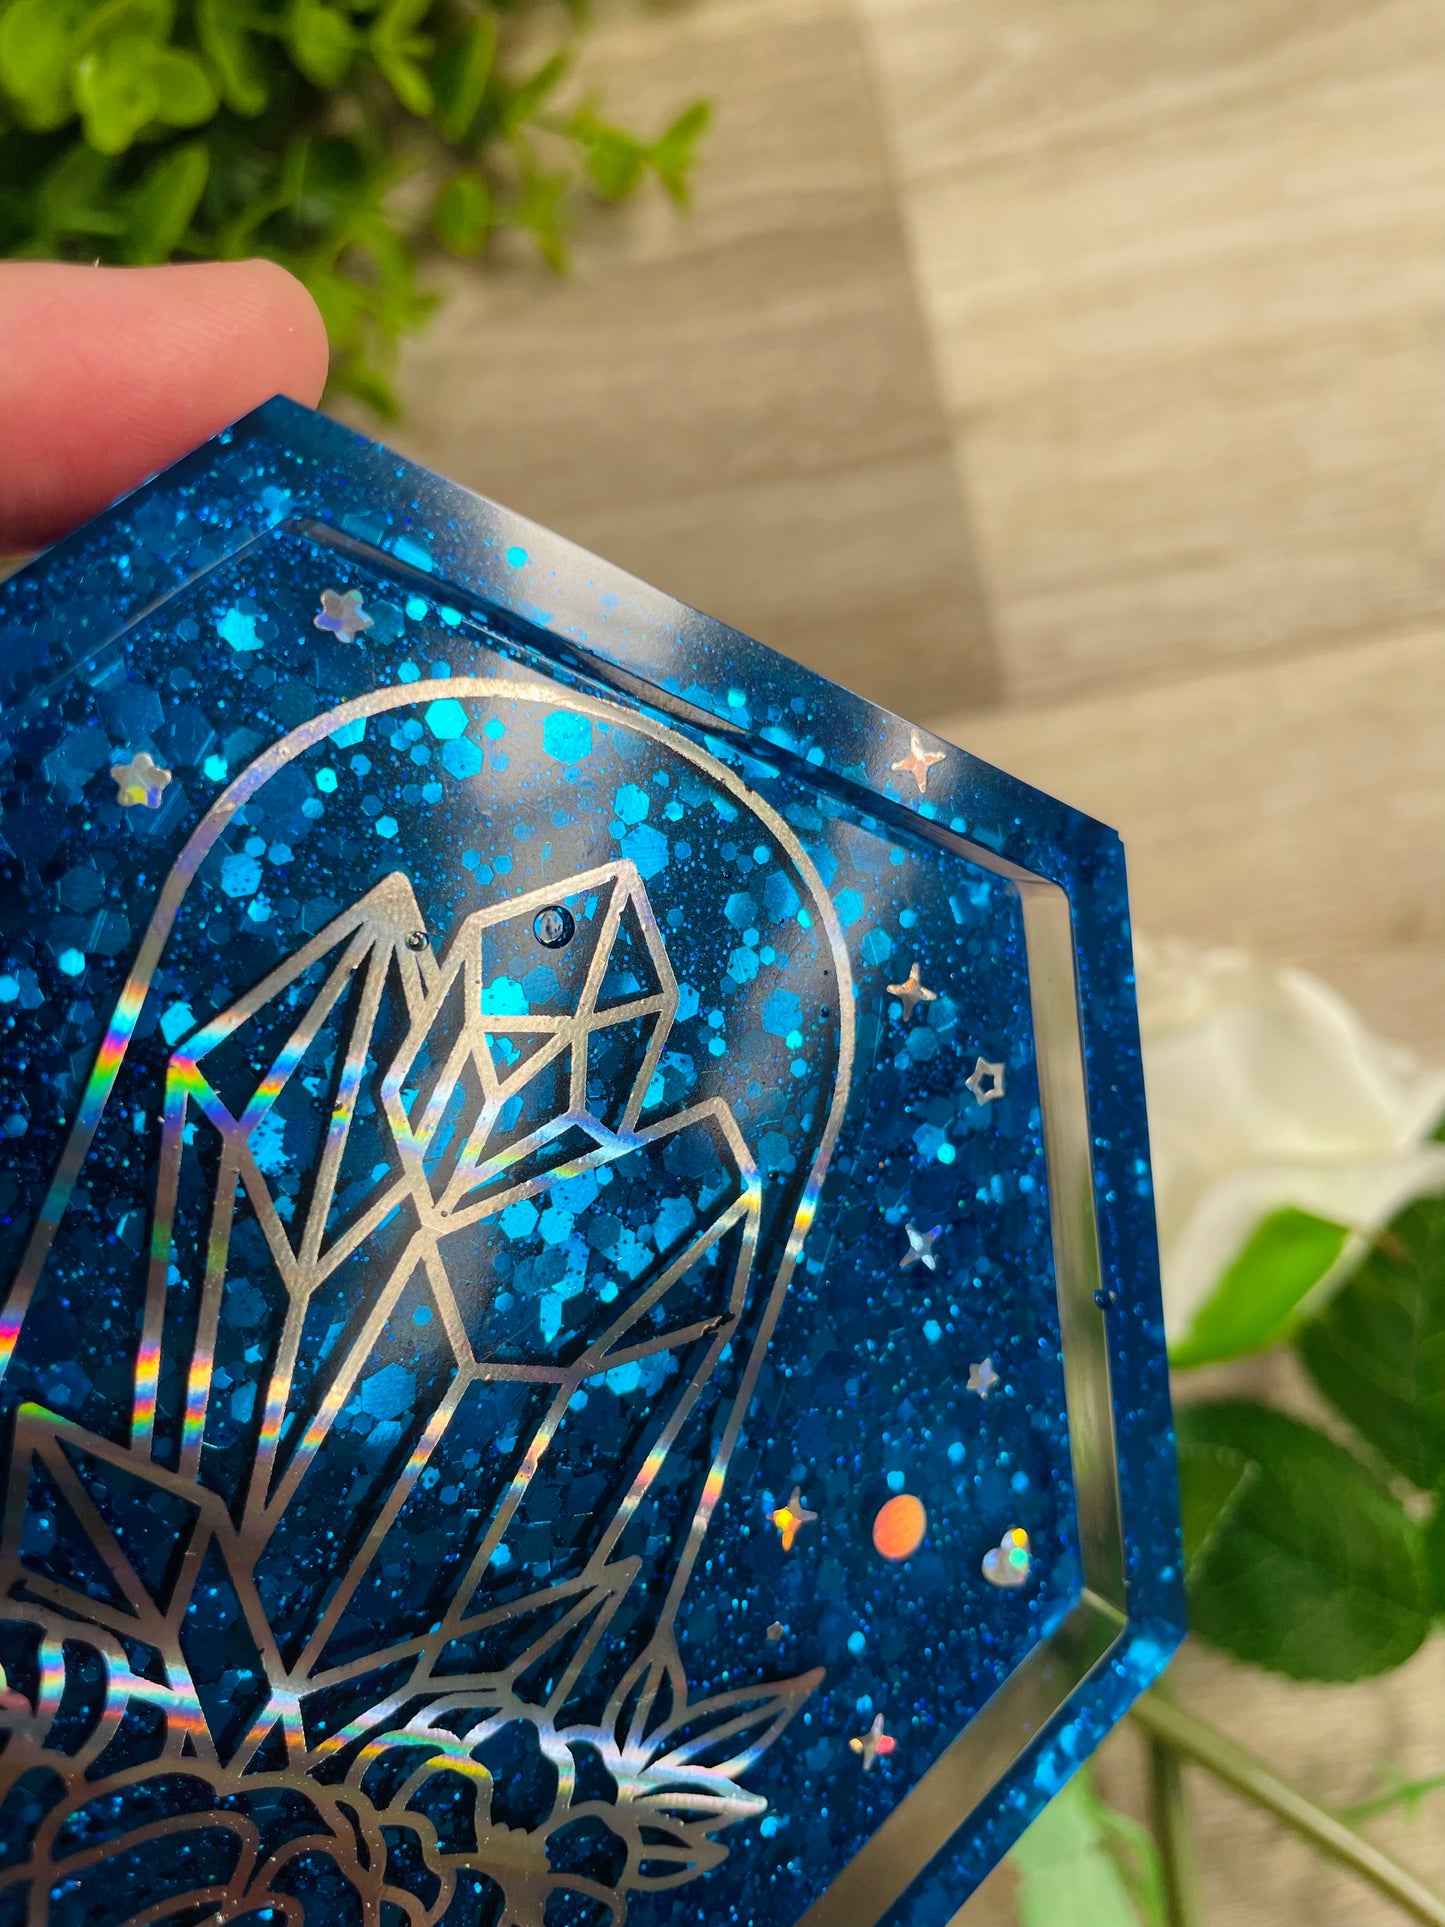 Hexagon Coaster - Blue Mystical